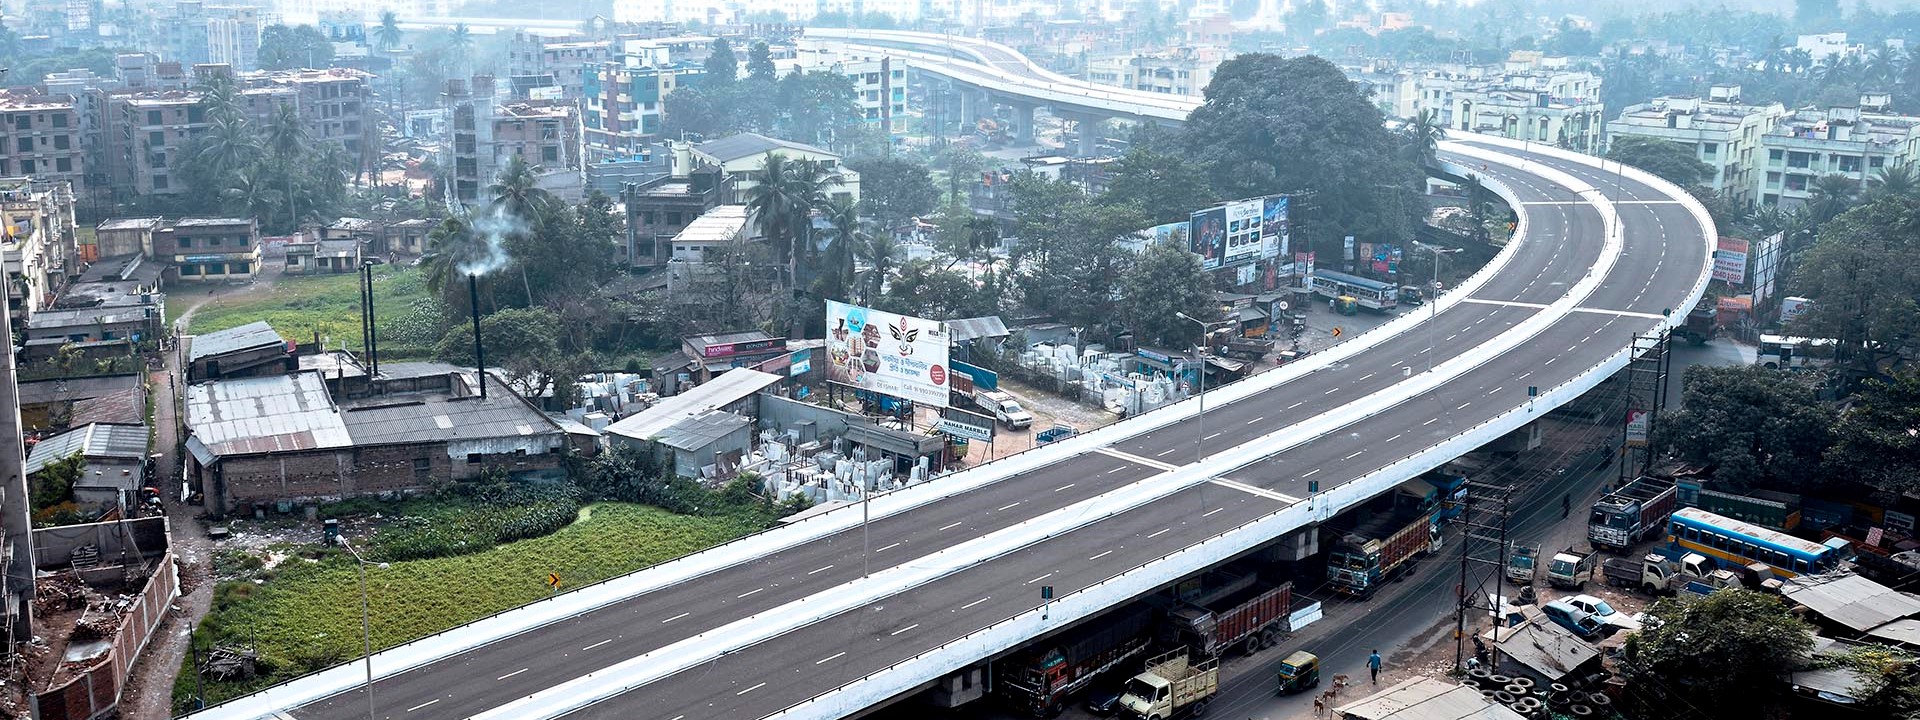 KMDA Flyover, Kolkata